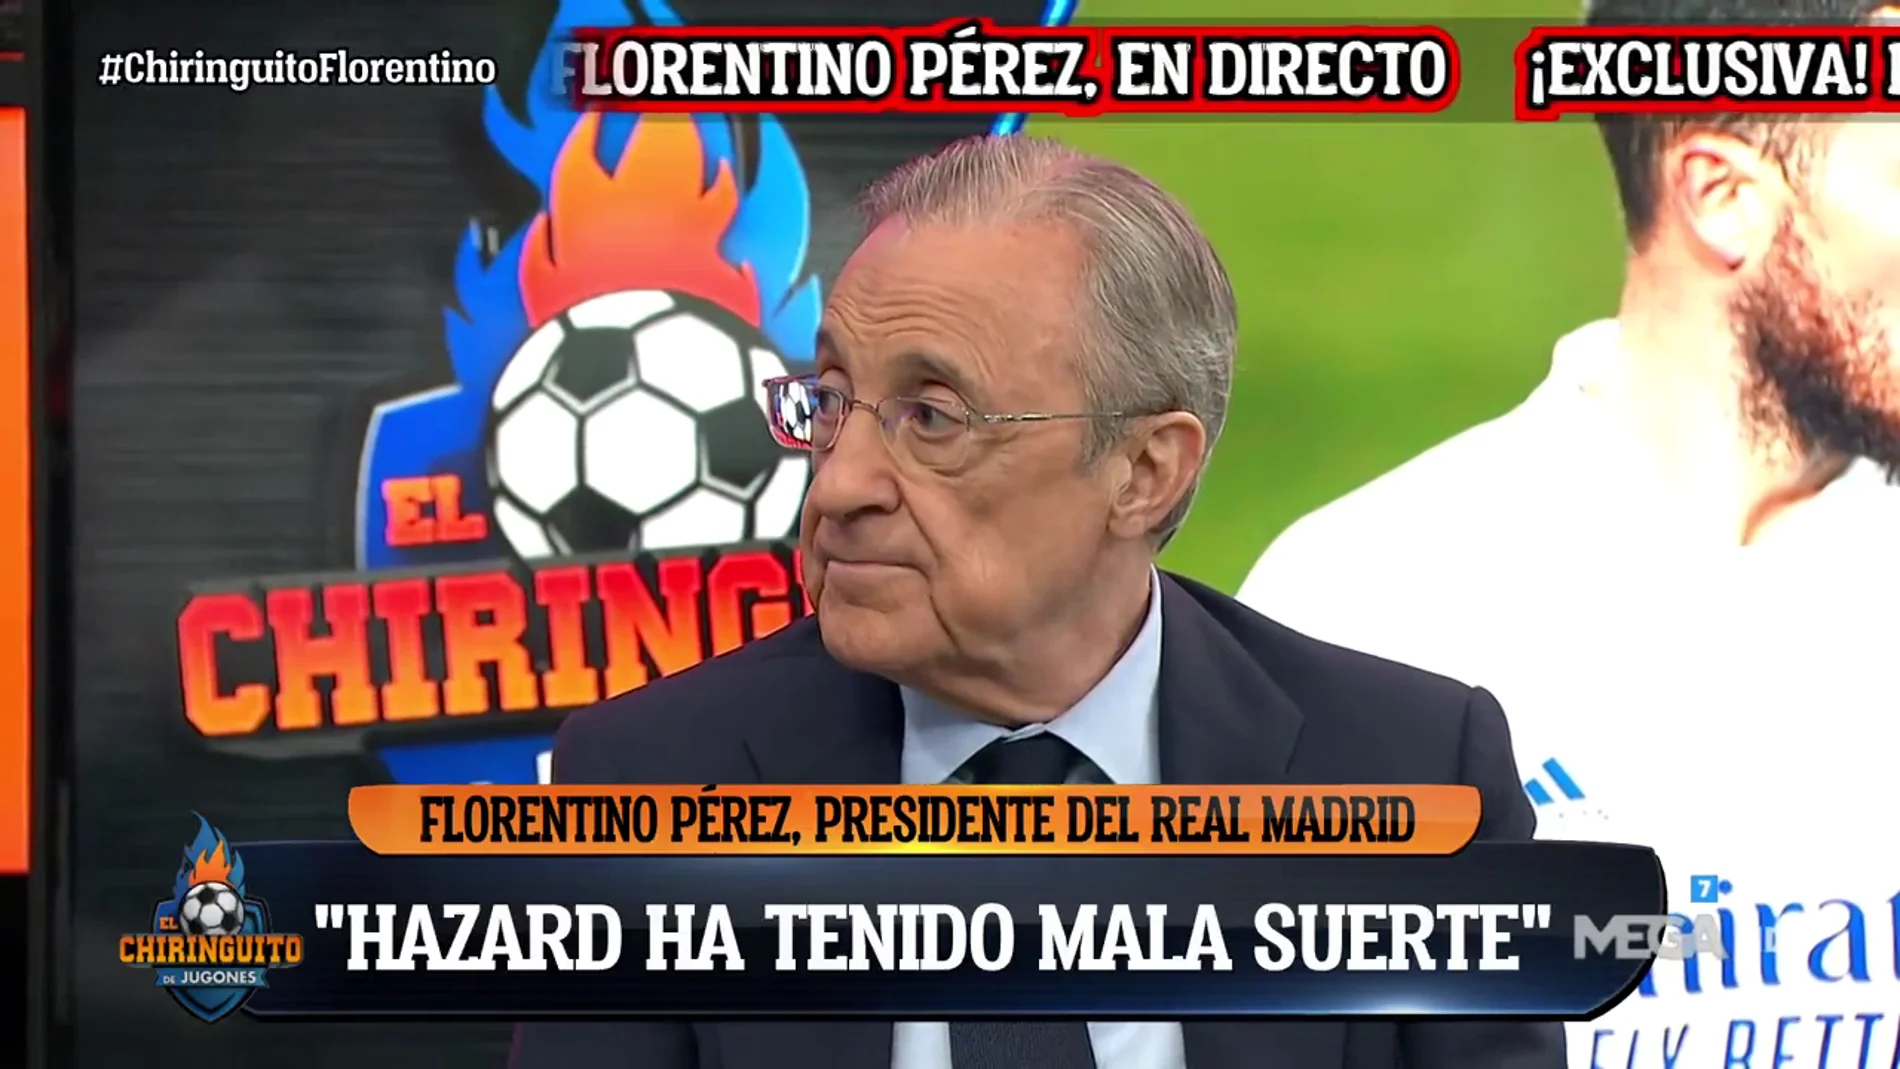 Florentino Pérez: "Hazard ha tenido muy mala suerte"